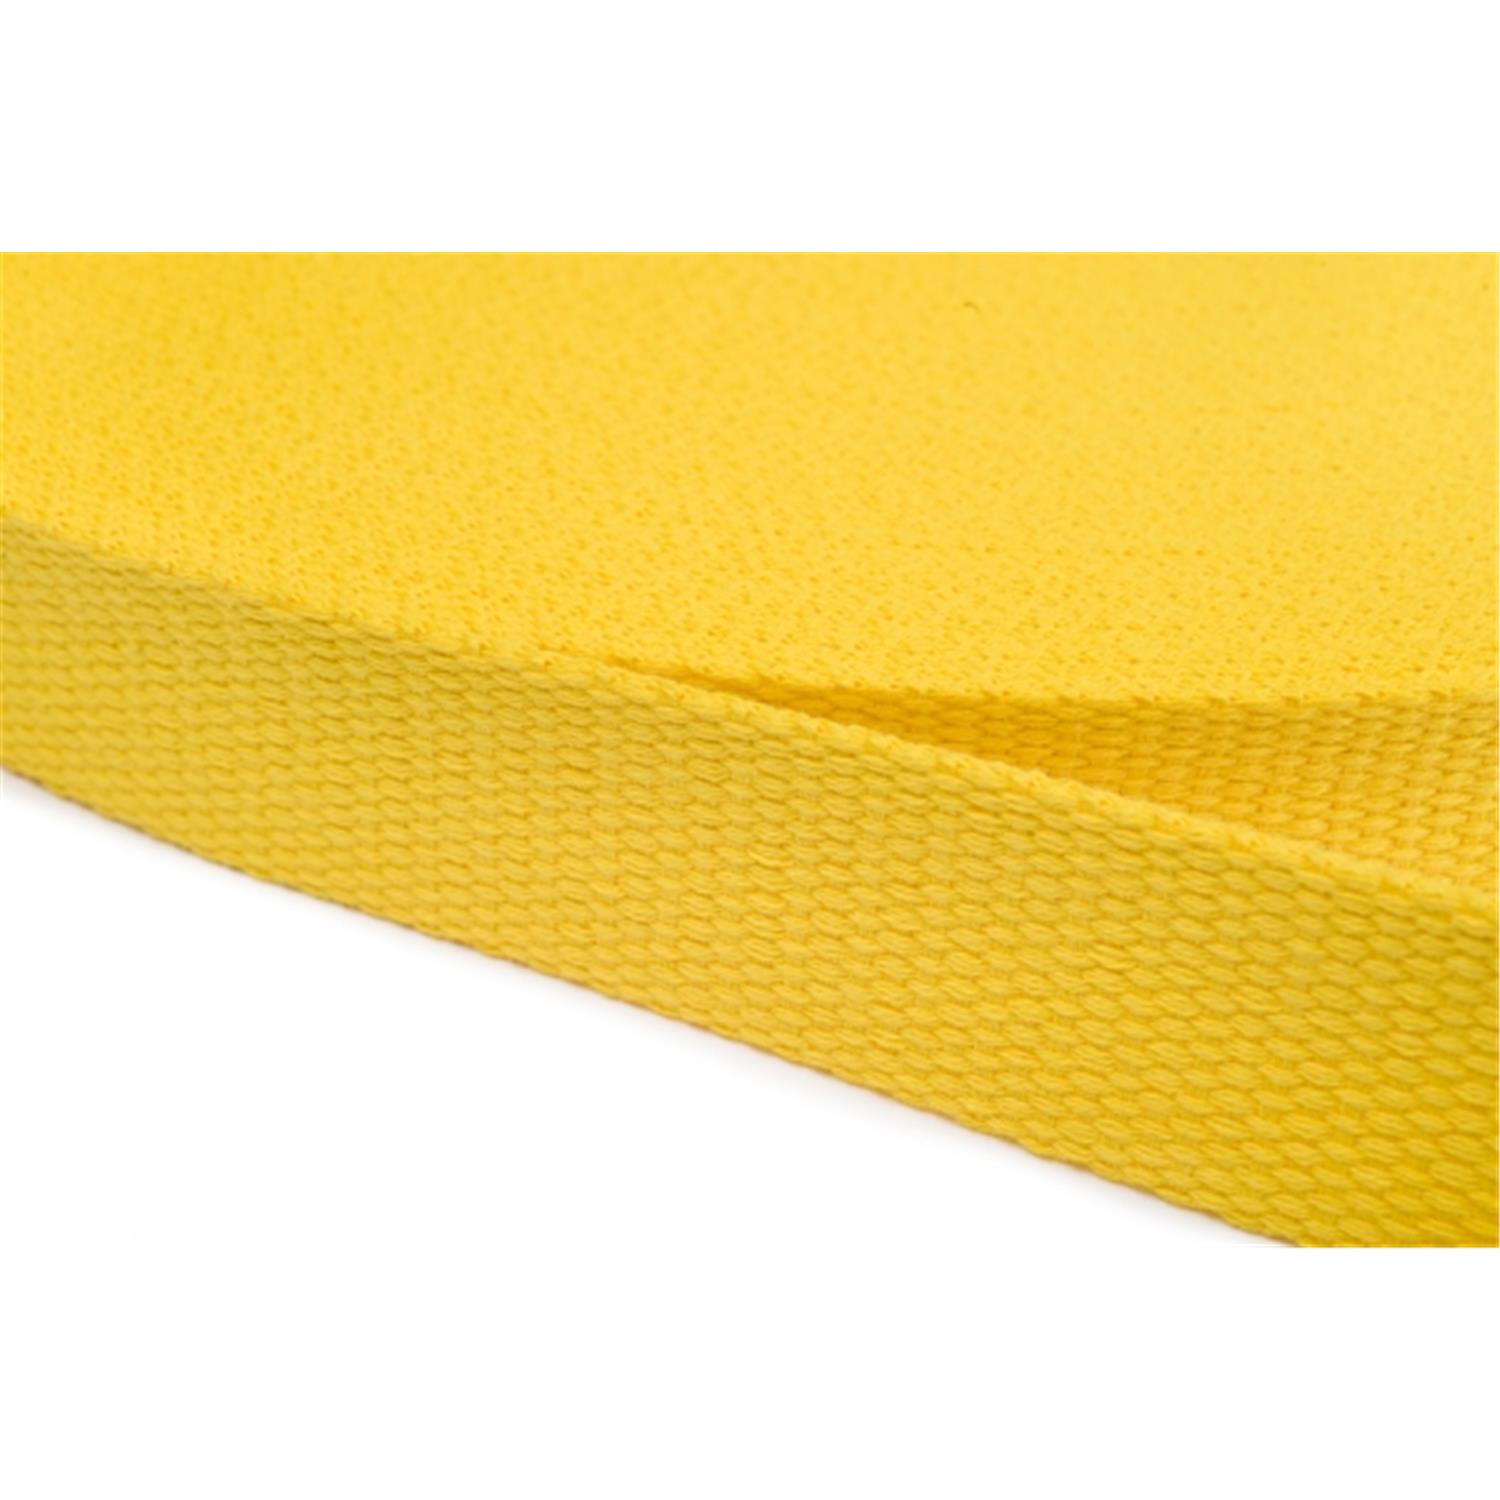 Gurtband aus Baumwolle 40mm in 20 Farben 05 - gelb 6 Meter